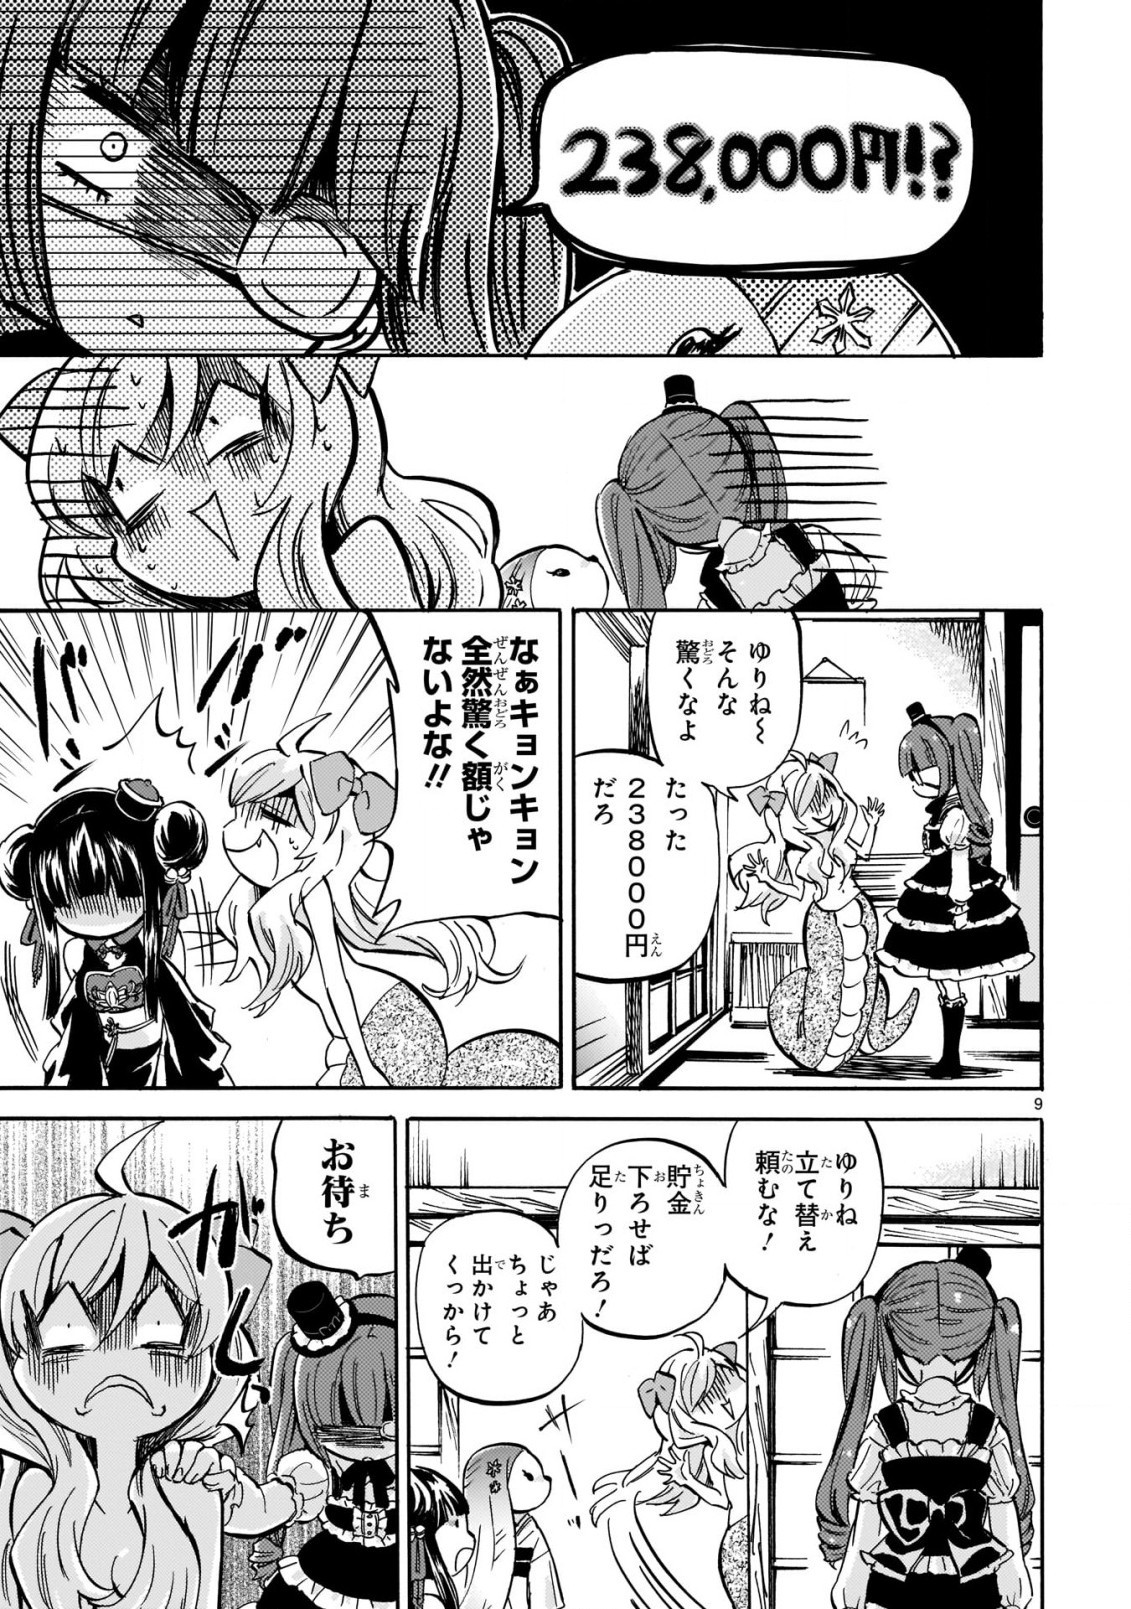 Jashin-chan Dropkick - Chapter 204 - Page 10